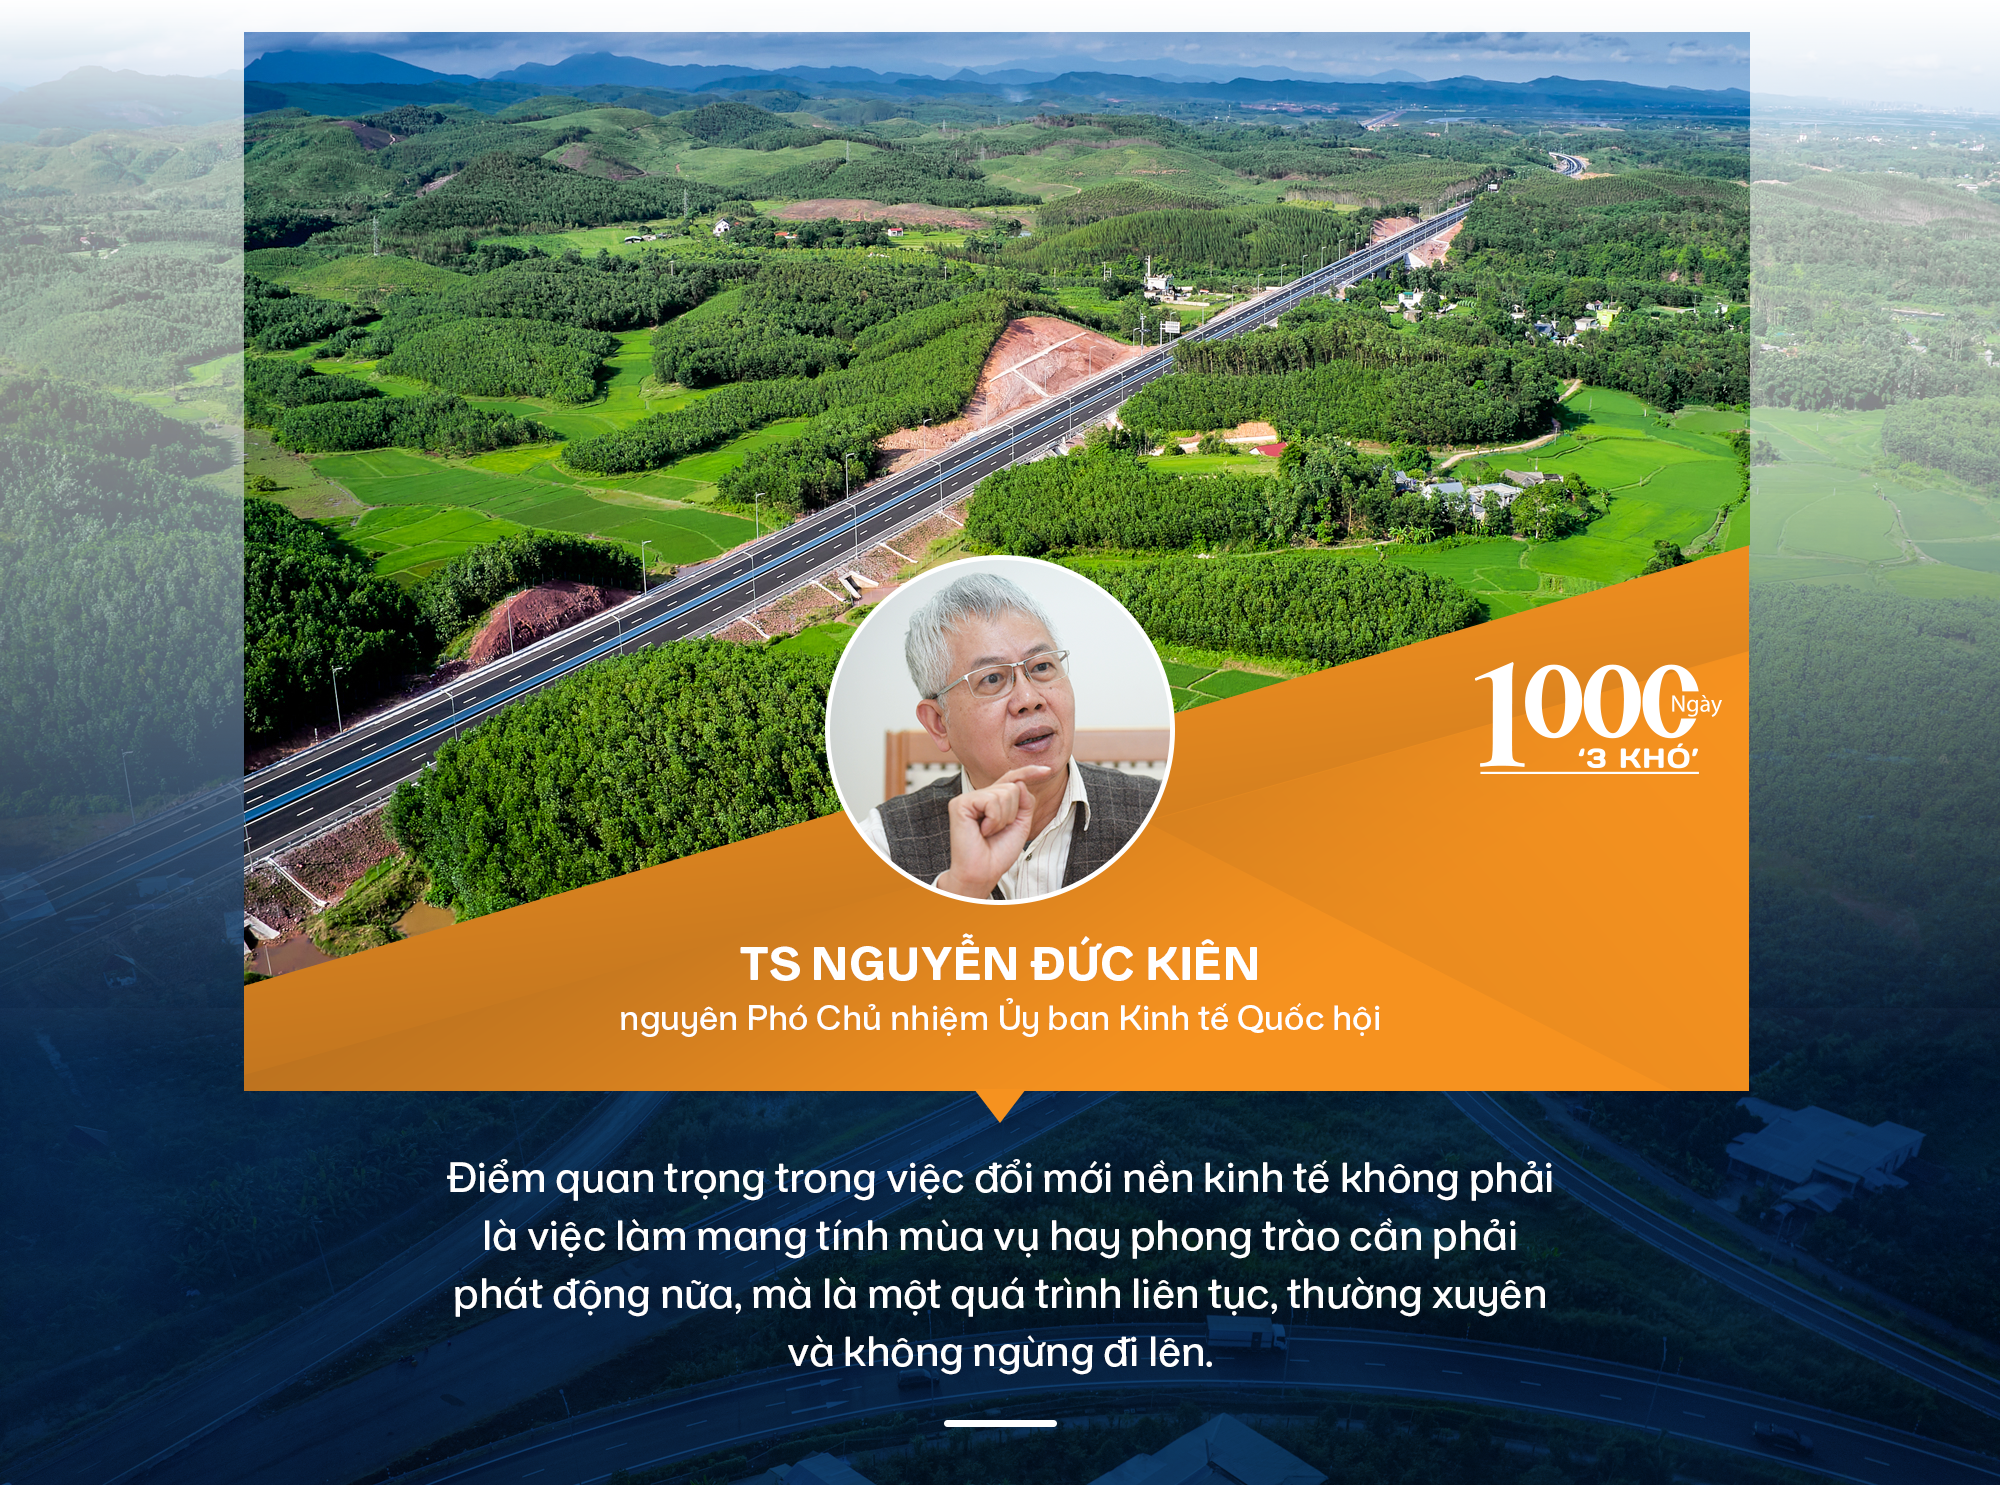 TS Nguyễn Đức Kiên phân tích yếu tố xuyên suốt và điểm đột phá trong 1.000 ngày '3 khó' của Chính phủ - Ảnh 10.